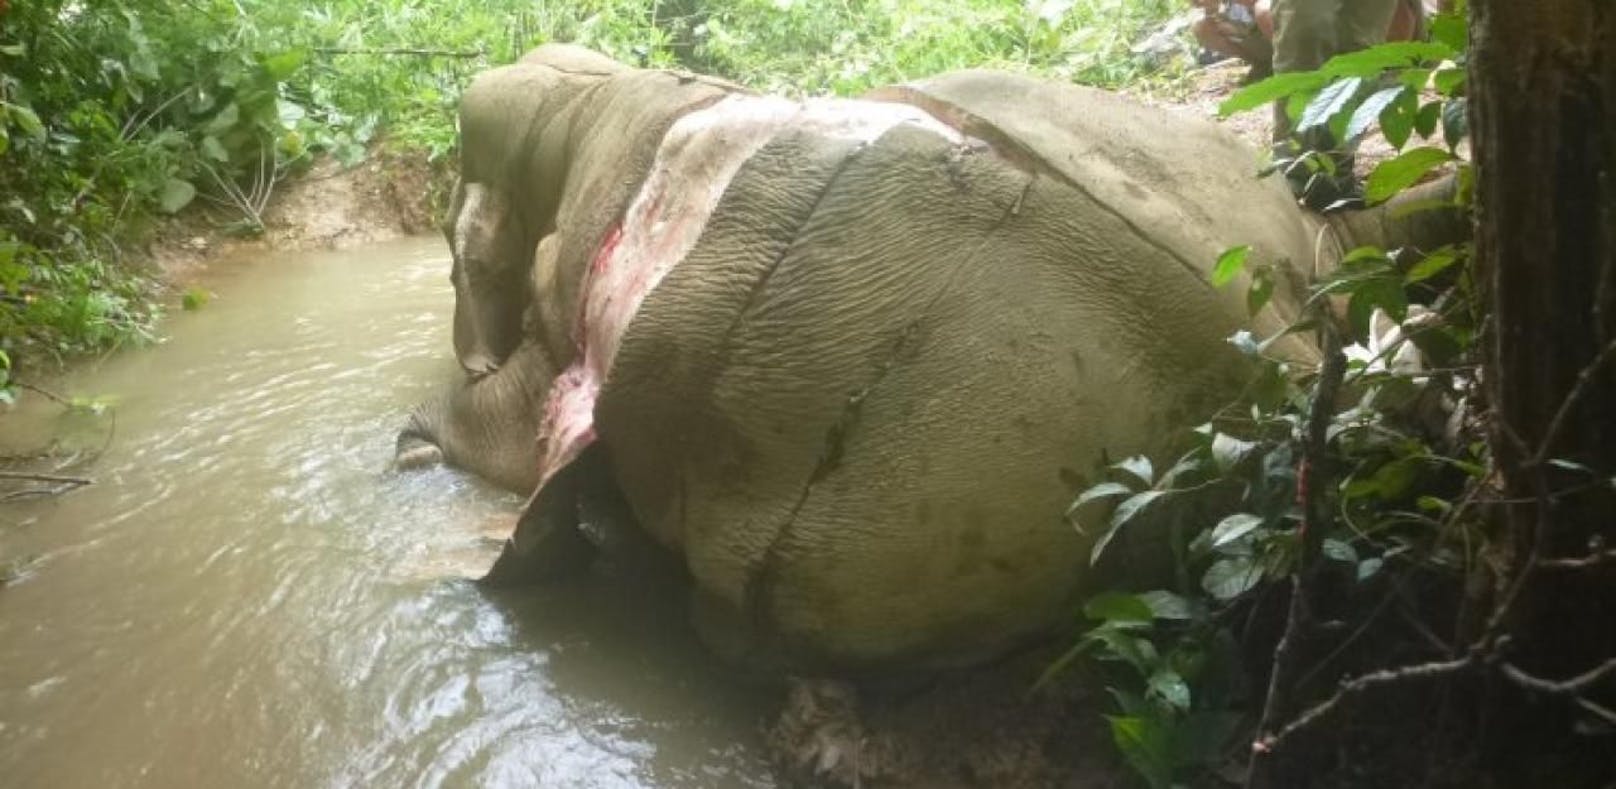 Elefanten werden für Hautcreme brutal gehäutet